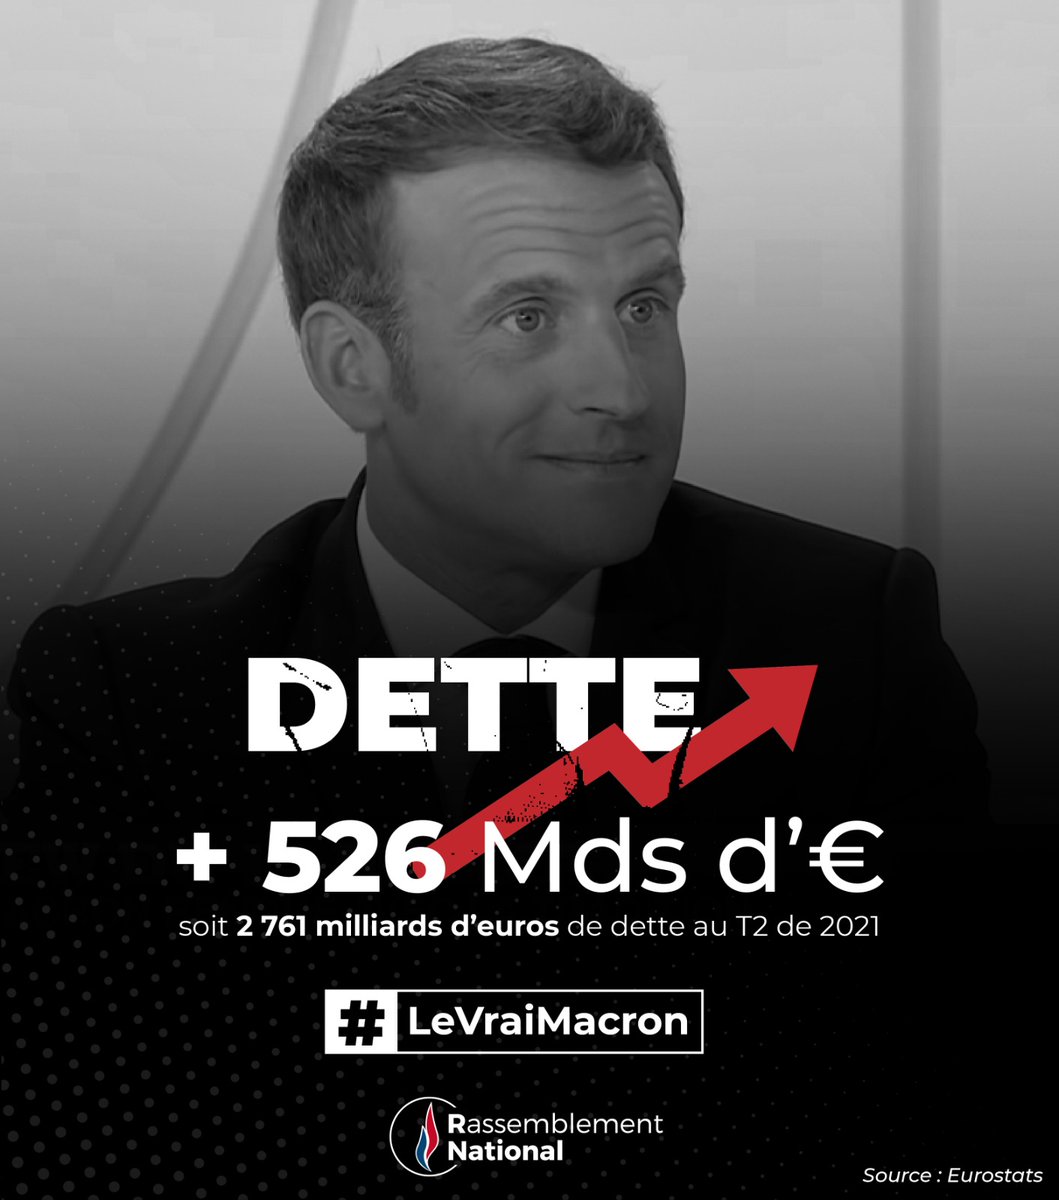 Emmanuel Macron parle de réduire la dette alors qu'elle a explosé sous son quinquennat. #LeVraiMacron #MacronTF1